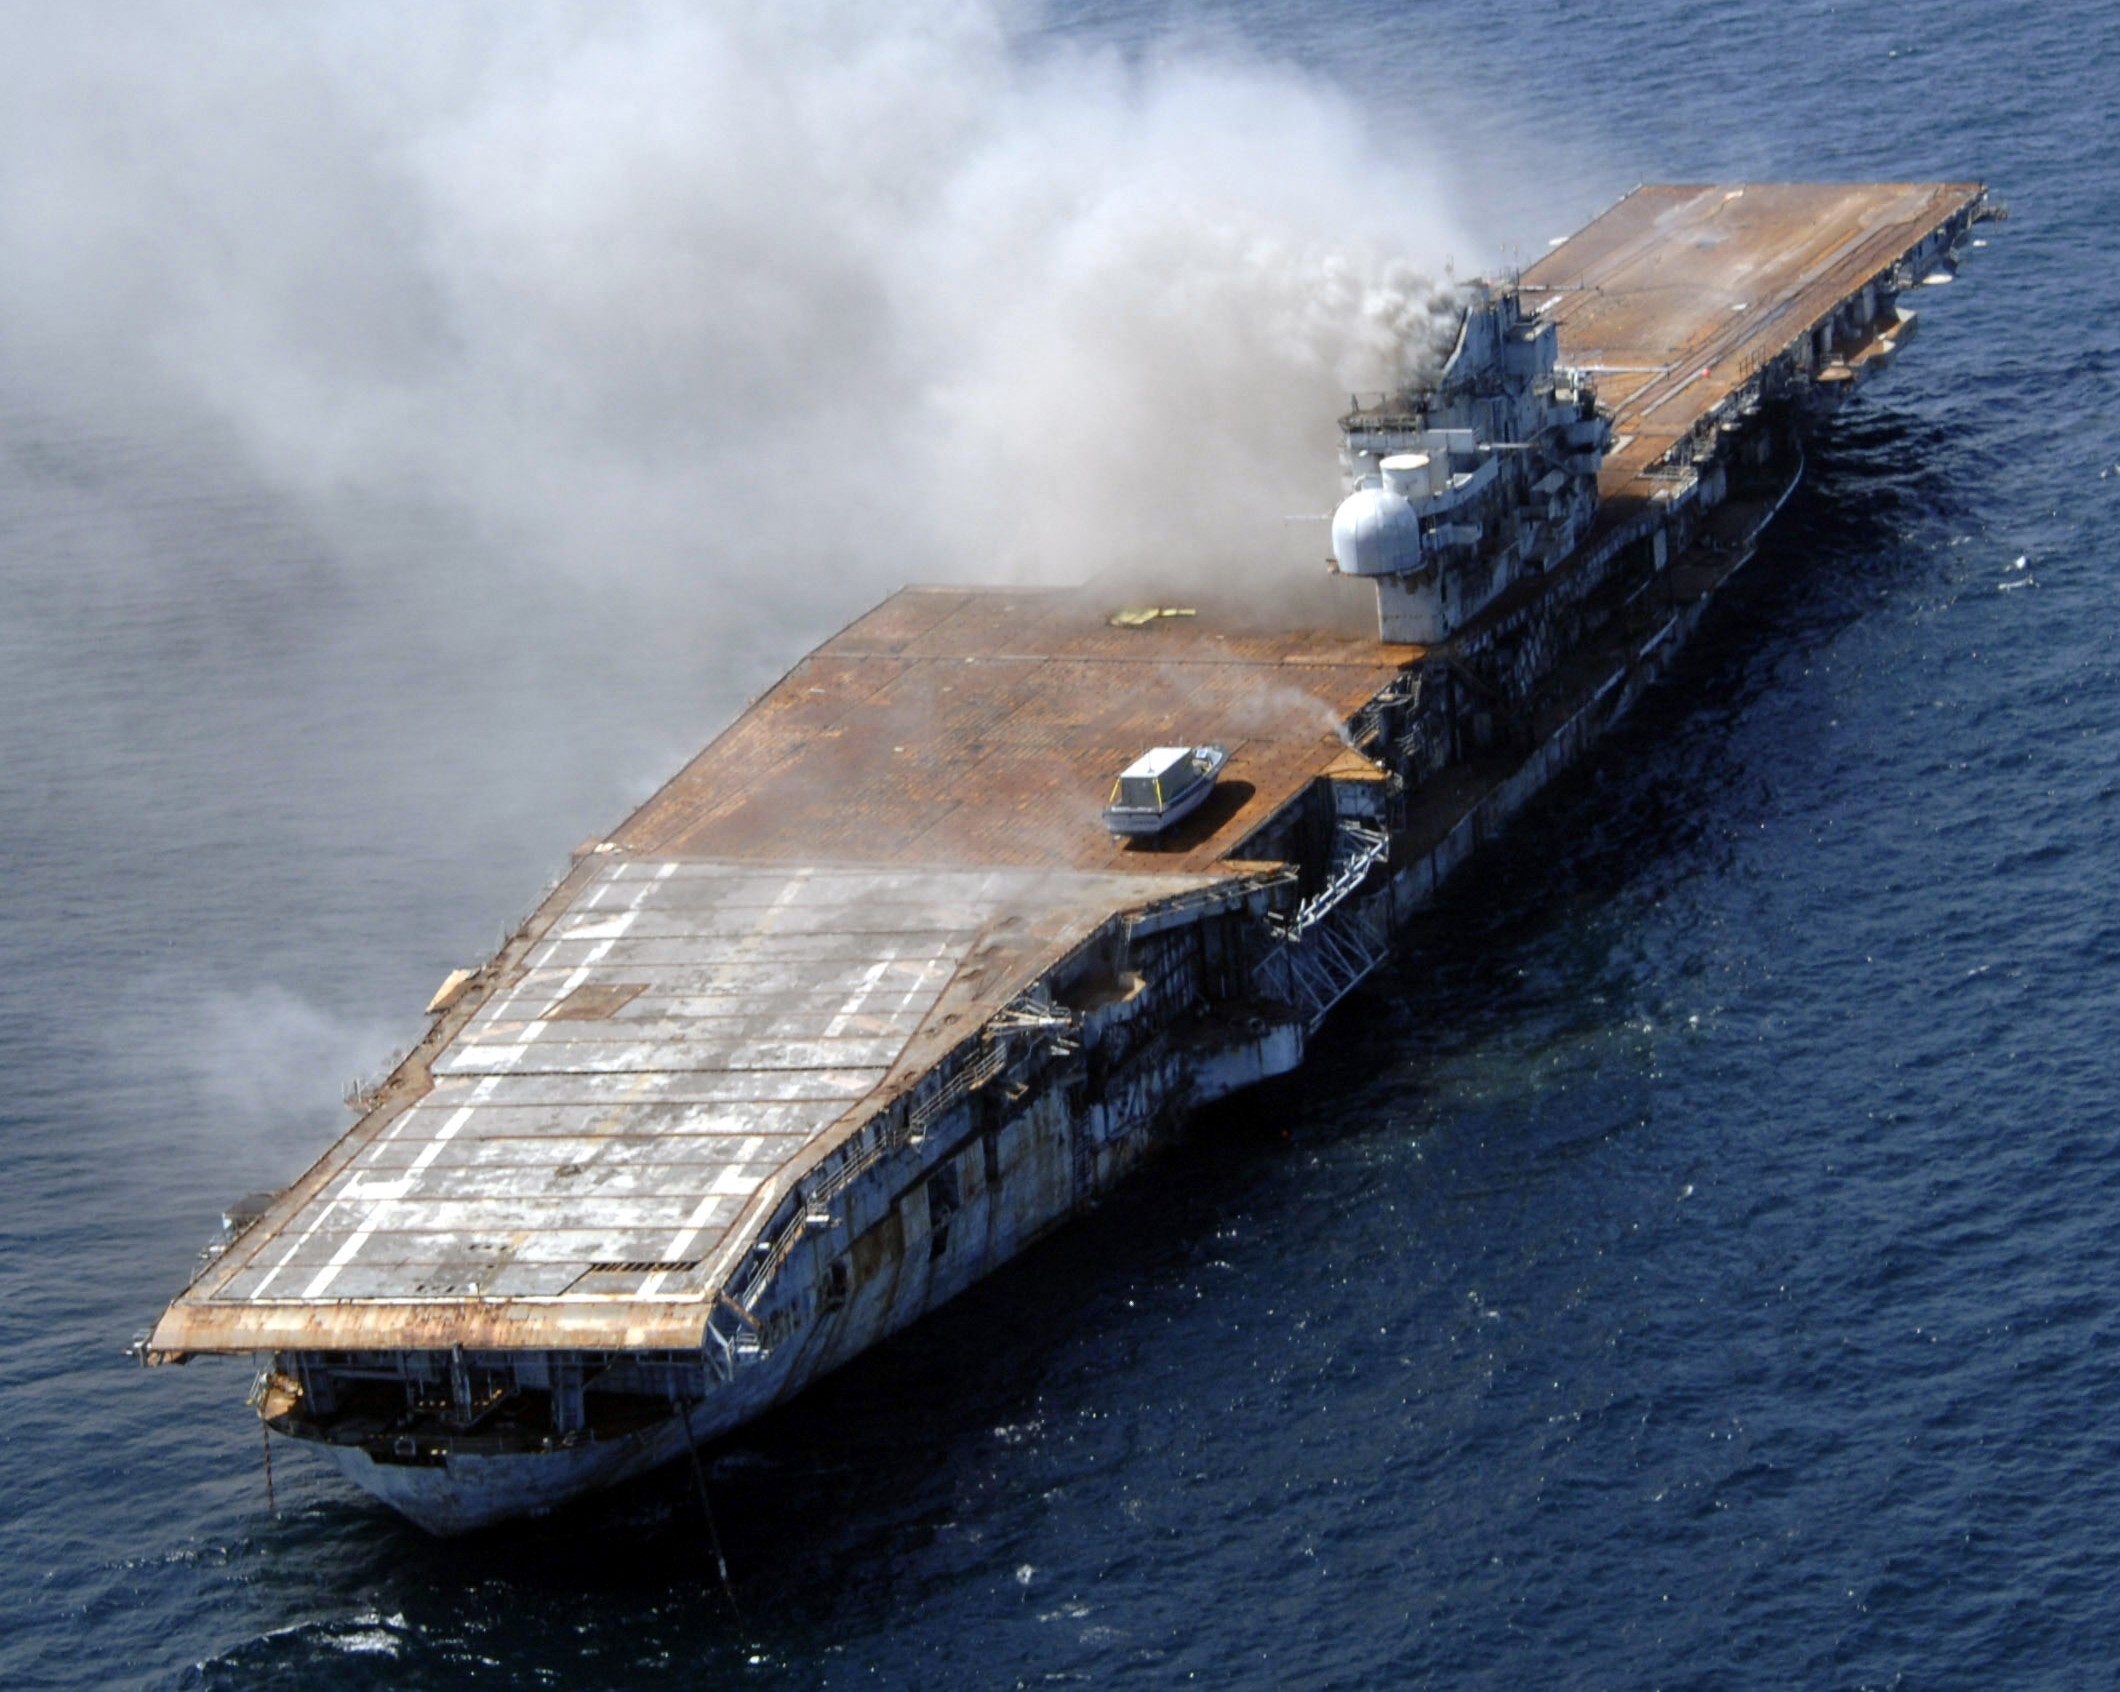 cv-34 uss oriskany essex class aircraft carrier us navy sinking artificial reef off florida 108